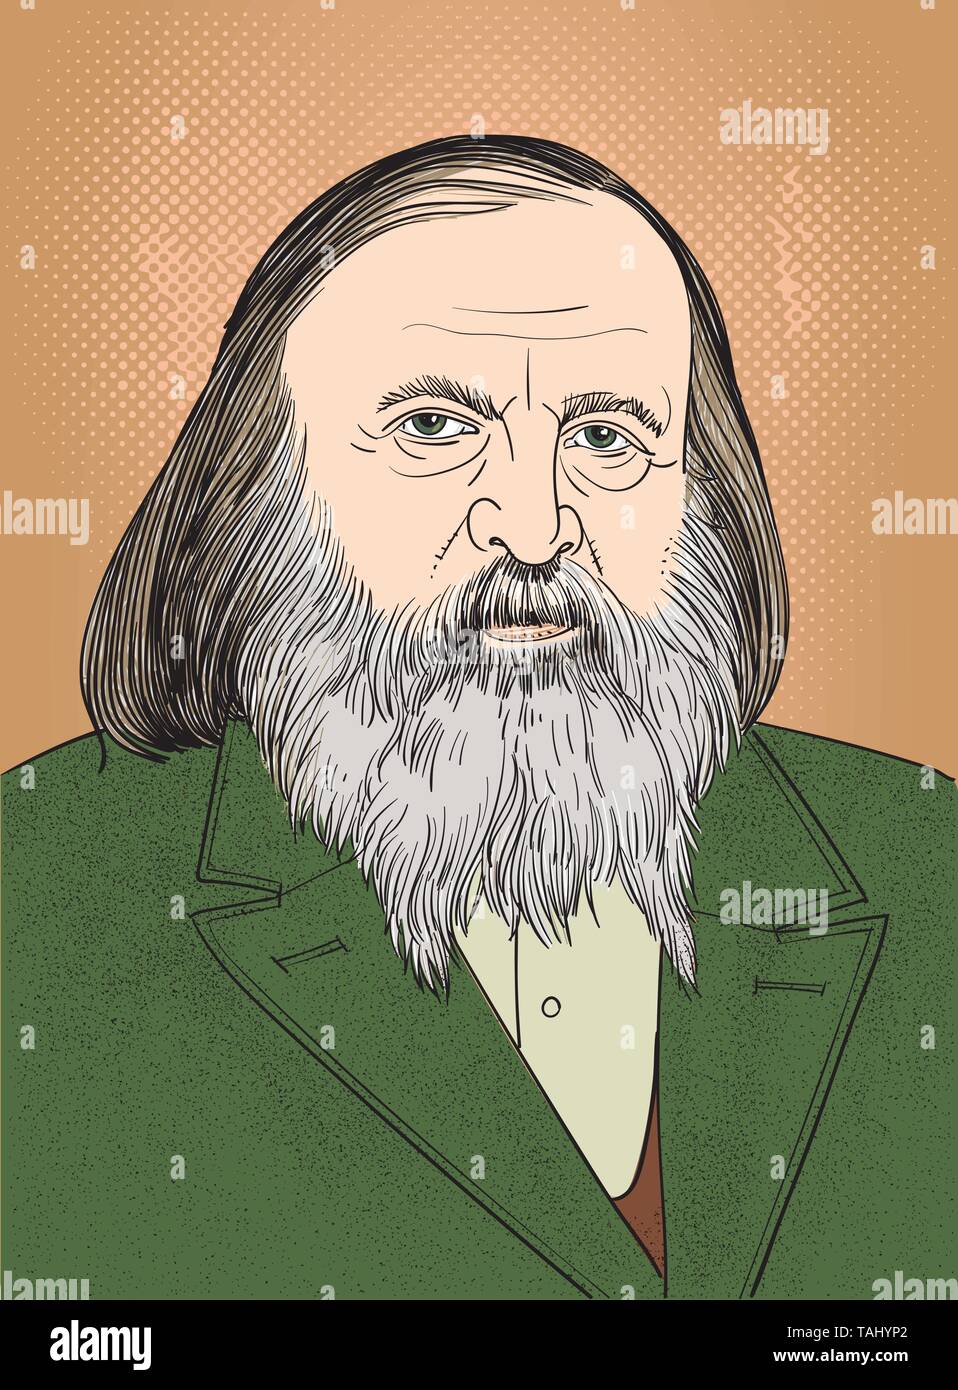 Dmitri Mendeleev (1834-1907) ritratto in linea tecnica illustrazione. Egli fu un chimico russo che ha sviluppato la classificazione periodica degli elementi. Illustrazione Vettoriale